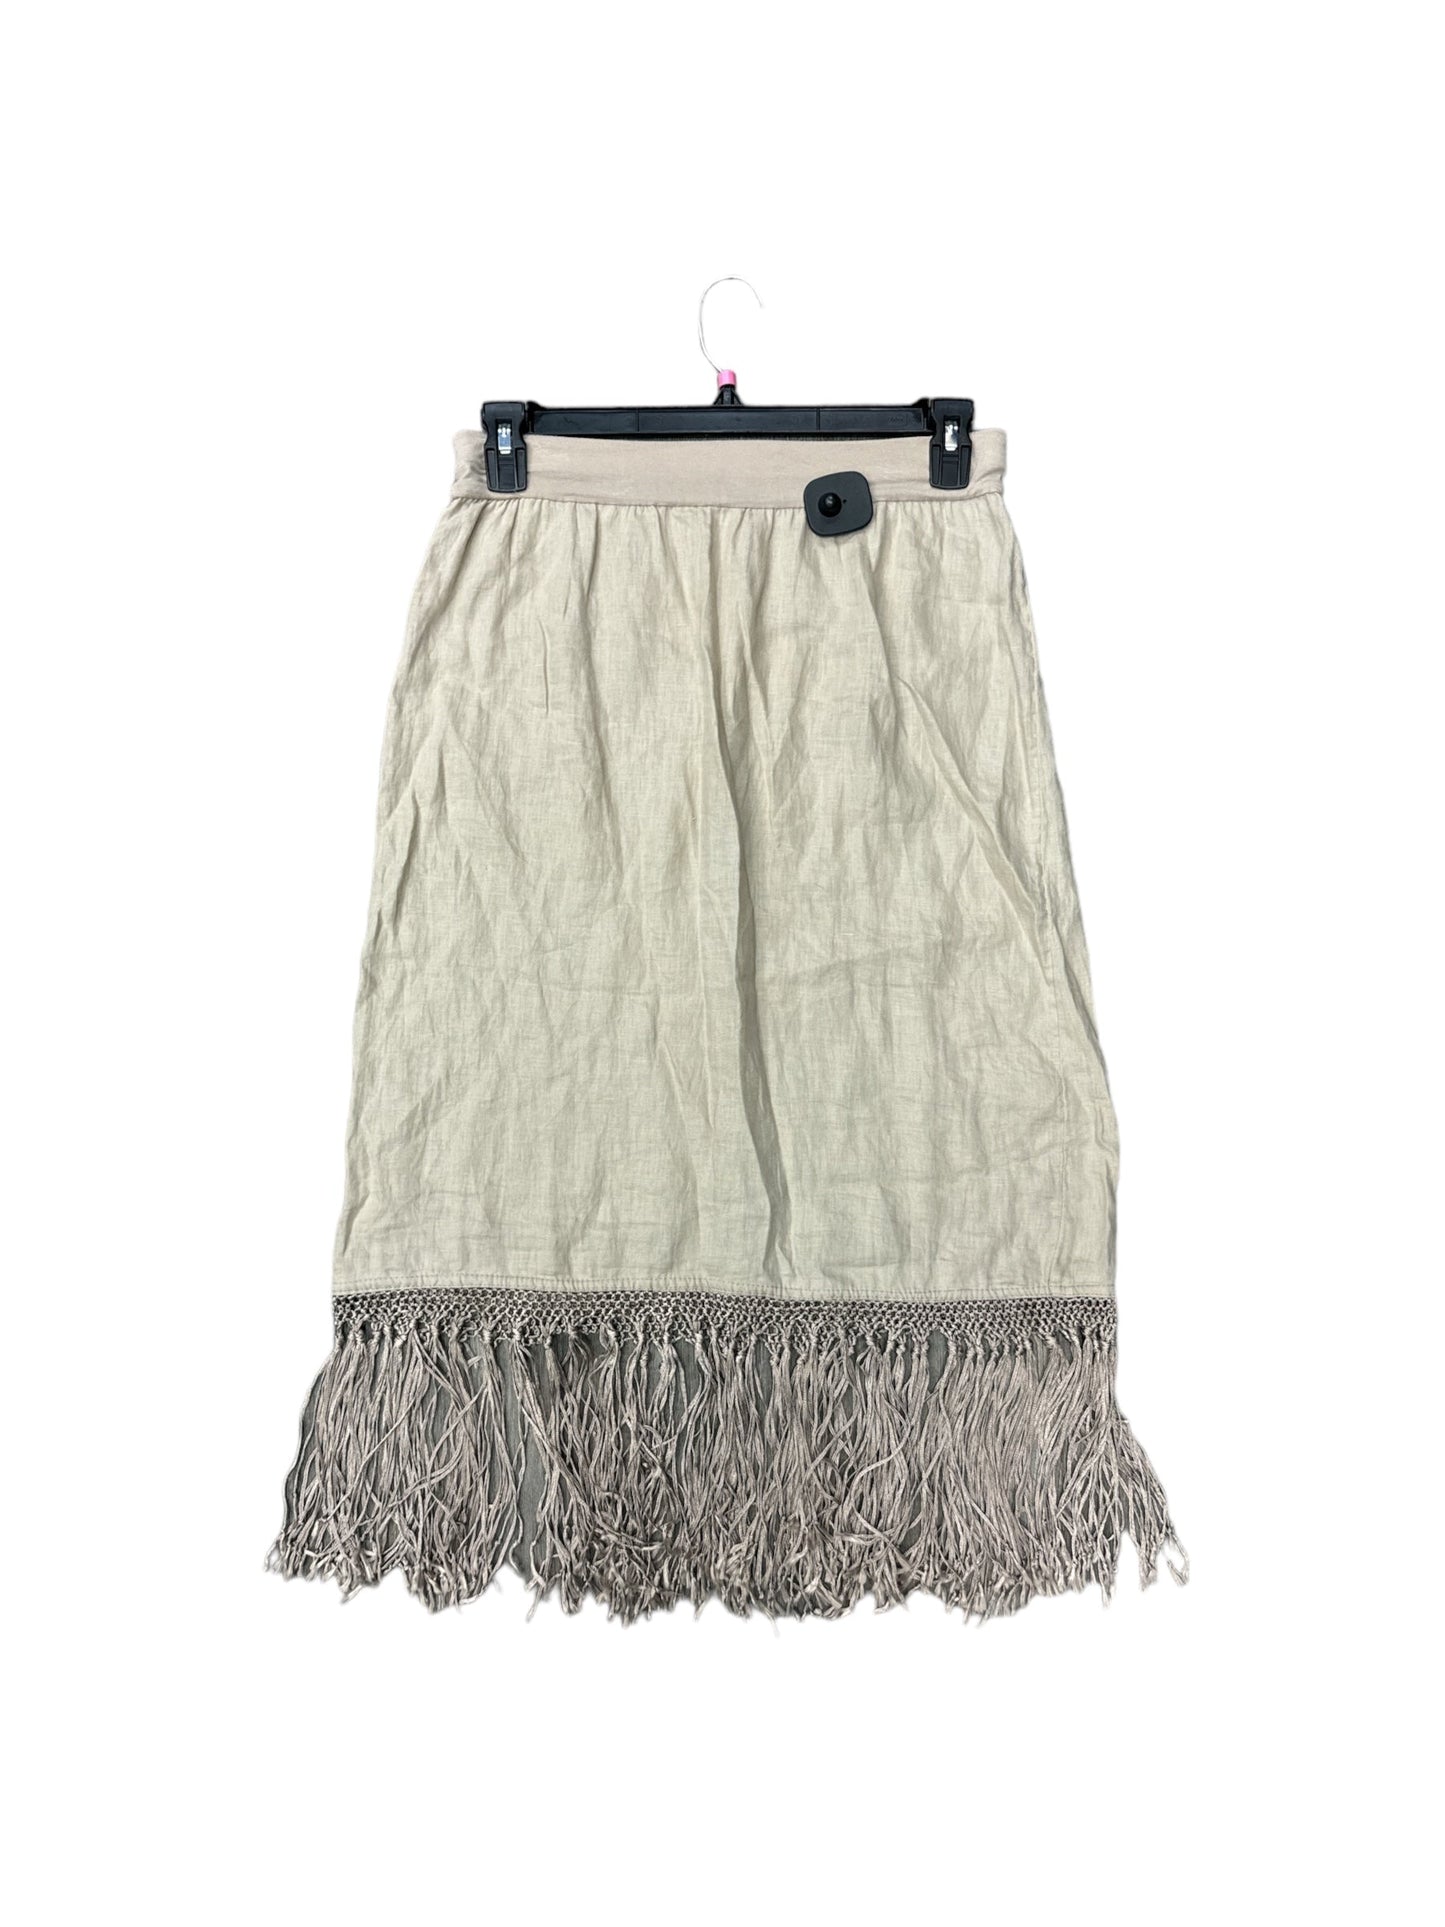 Tan Skirt Midi Chicos, Size 6